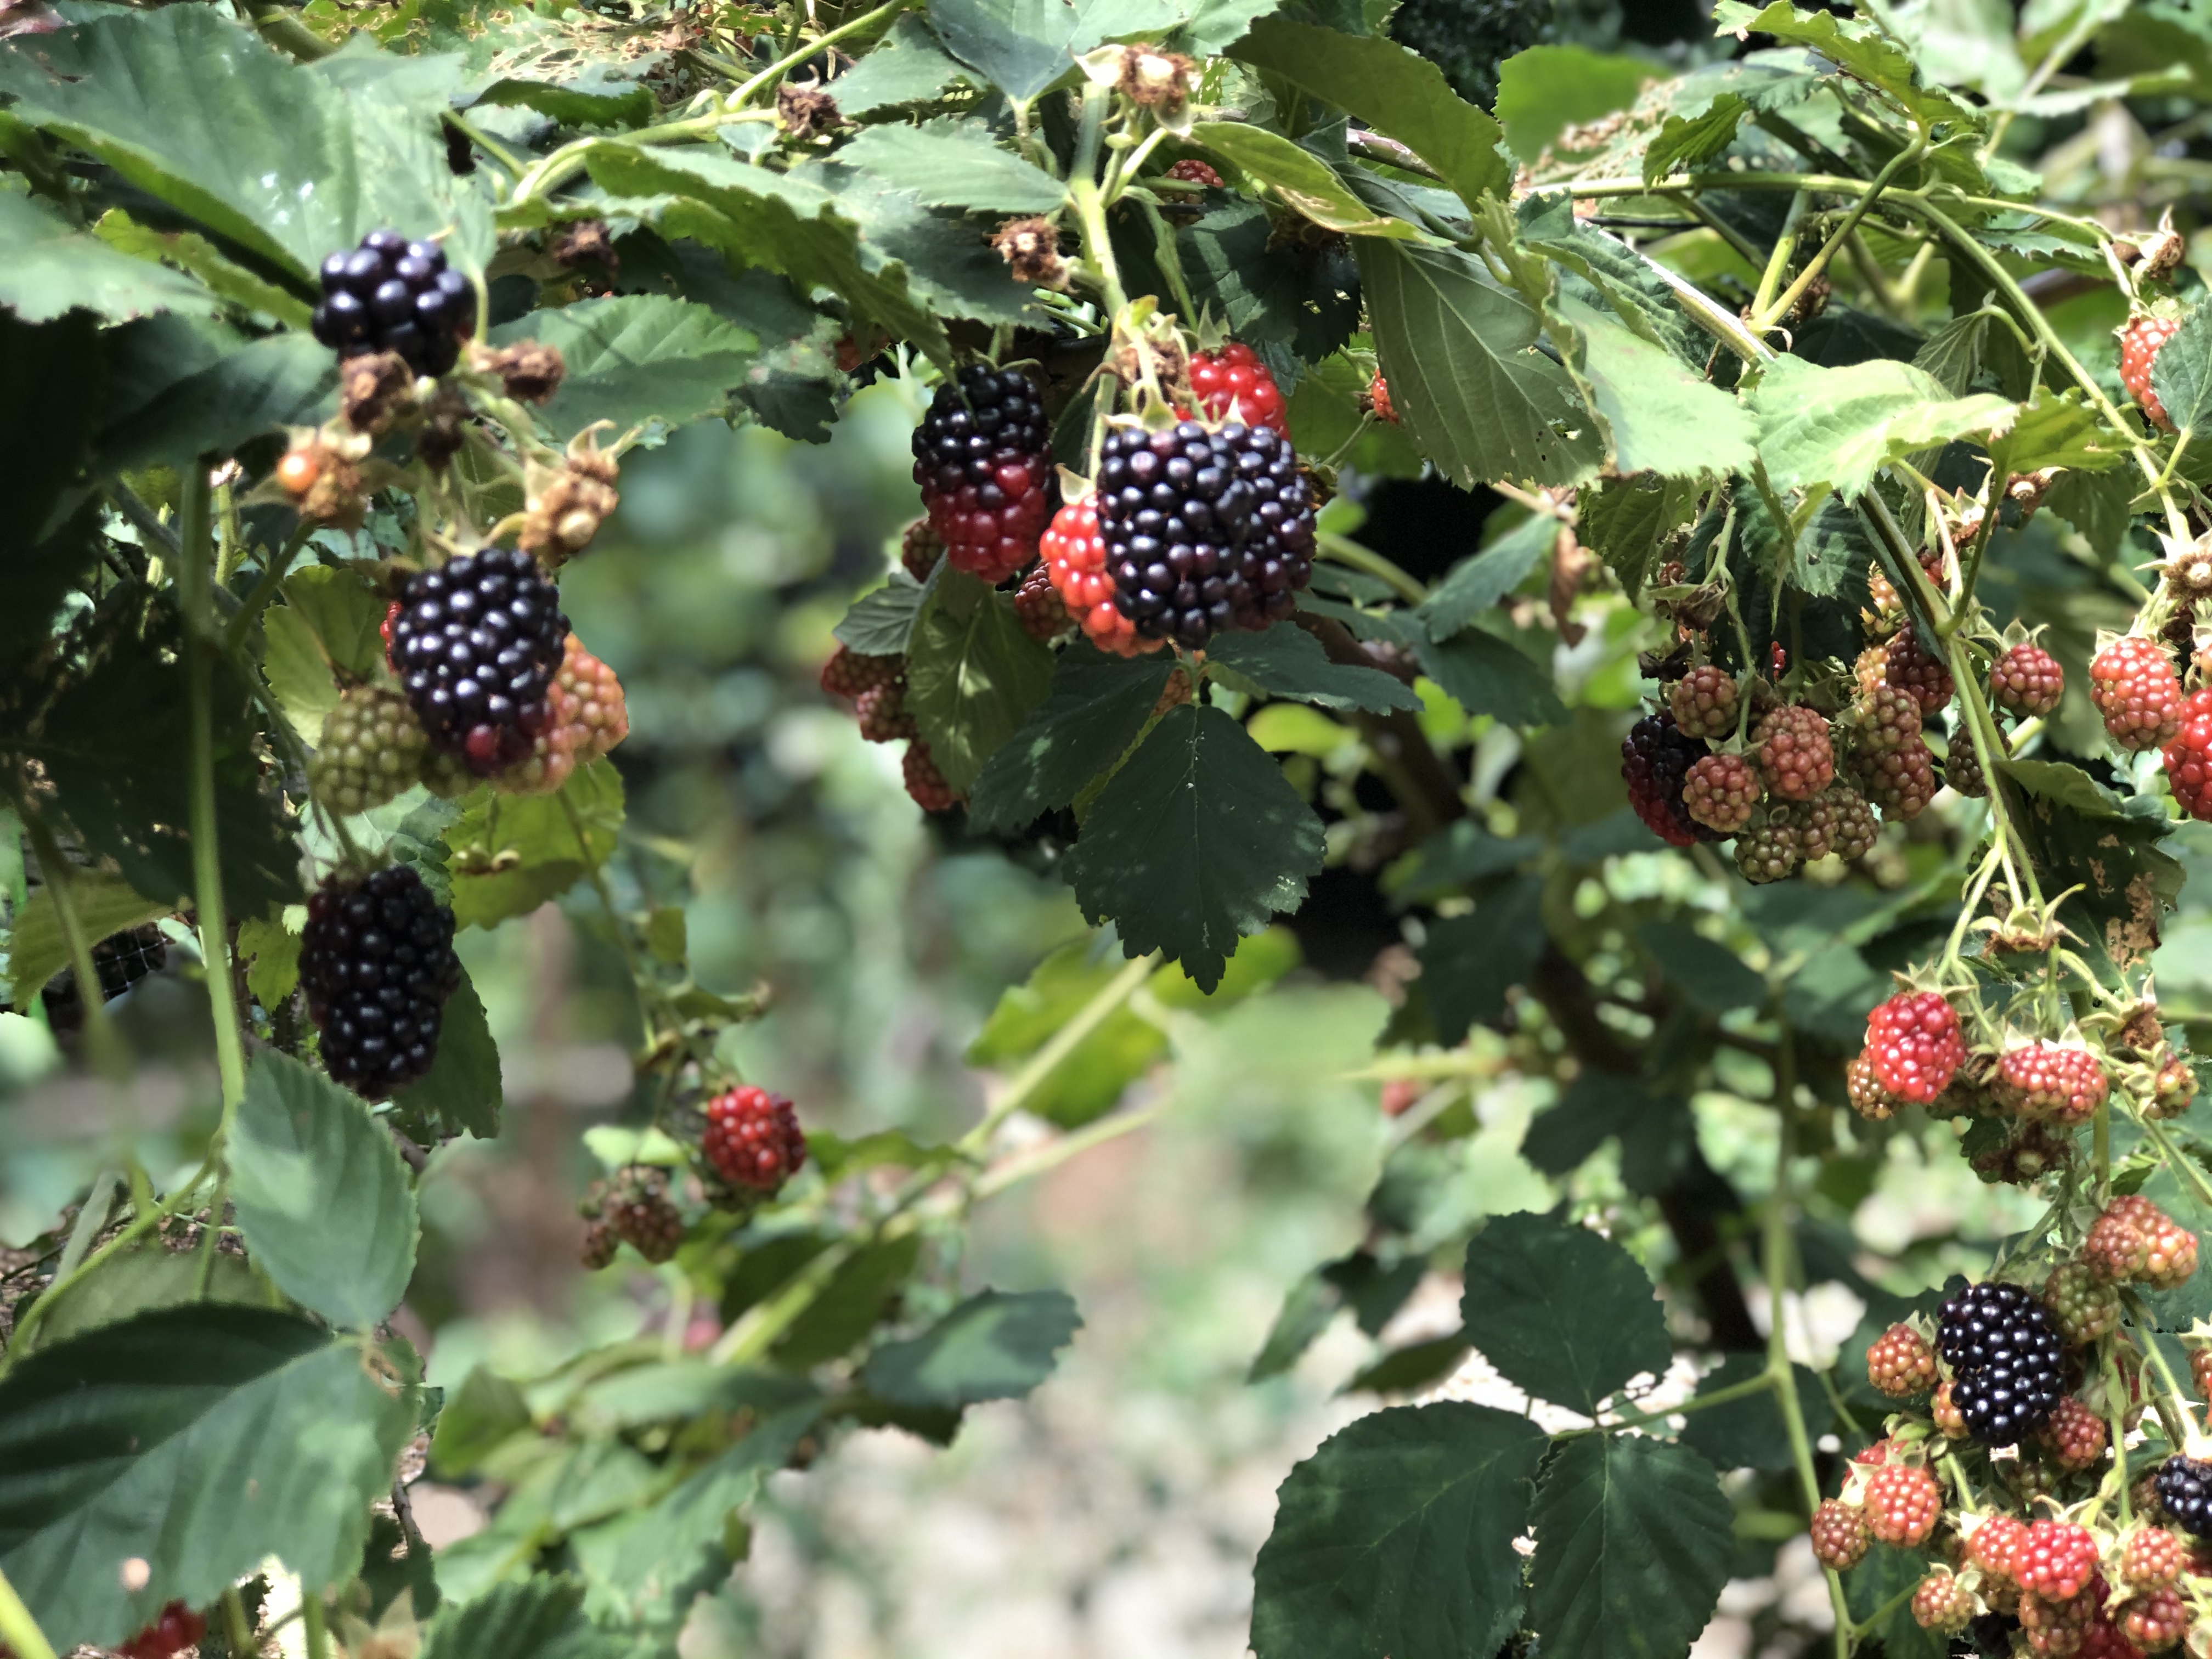 Blackberries on the bush.